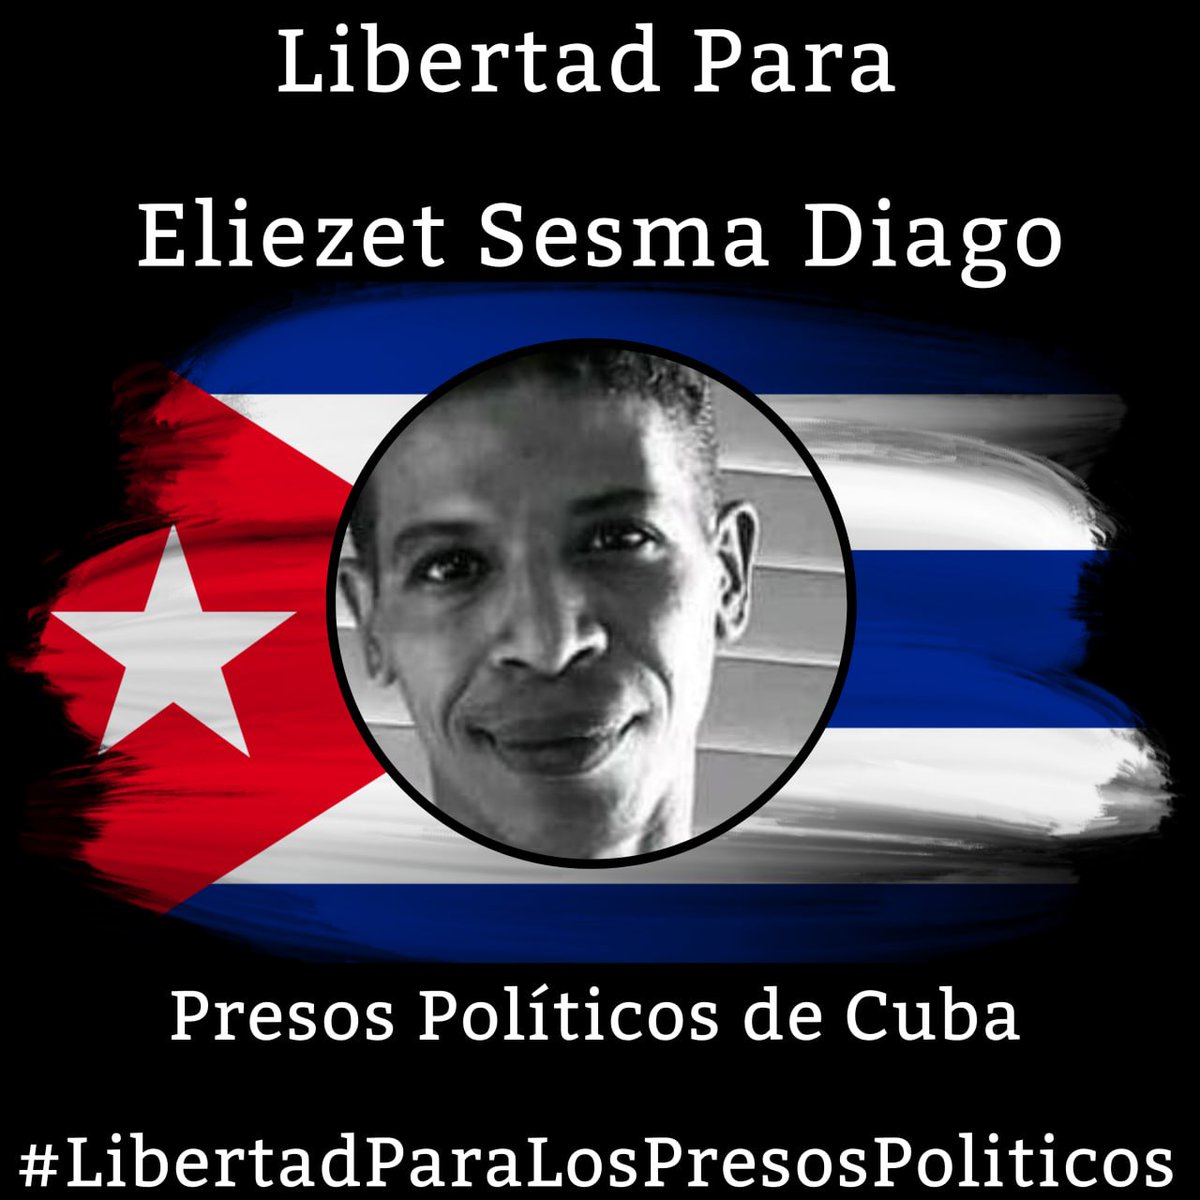 #Twittazo Libertad para Eliezet Sesma Diago. 
.
“Sin aire, la tierra muere. Sin libertad, como sin aire propio y esencial, nada vive.” -José Martí-
.
.
.
#HastaQueSeanLibres 
#PresosPoliticosDeCuba
#LibertadYJusticiaParaCuba